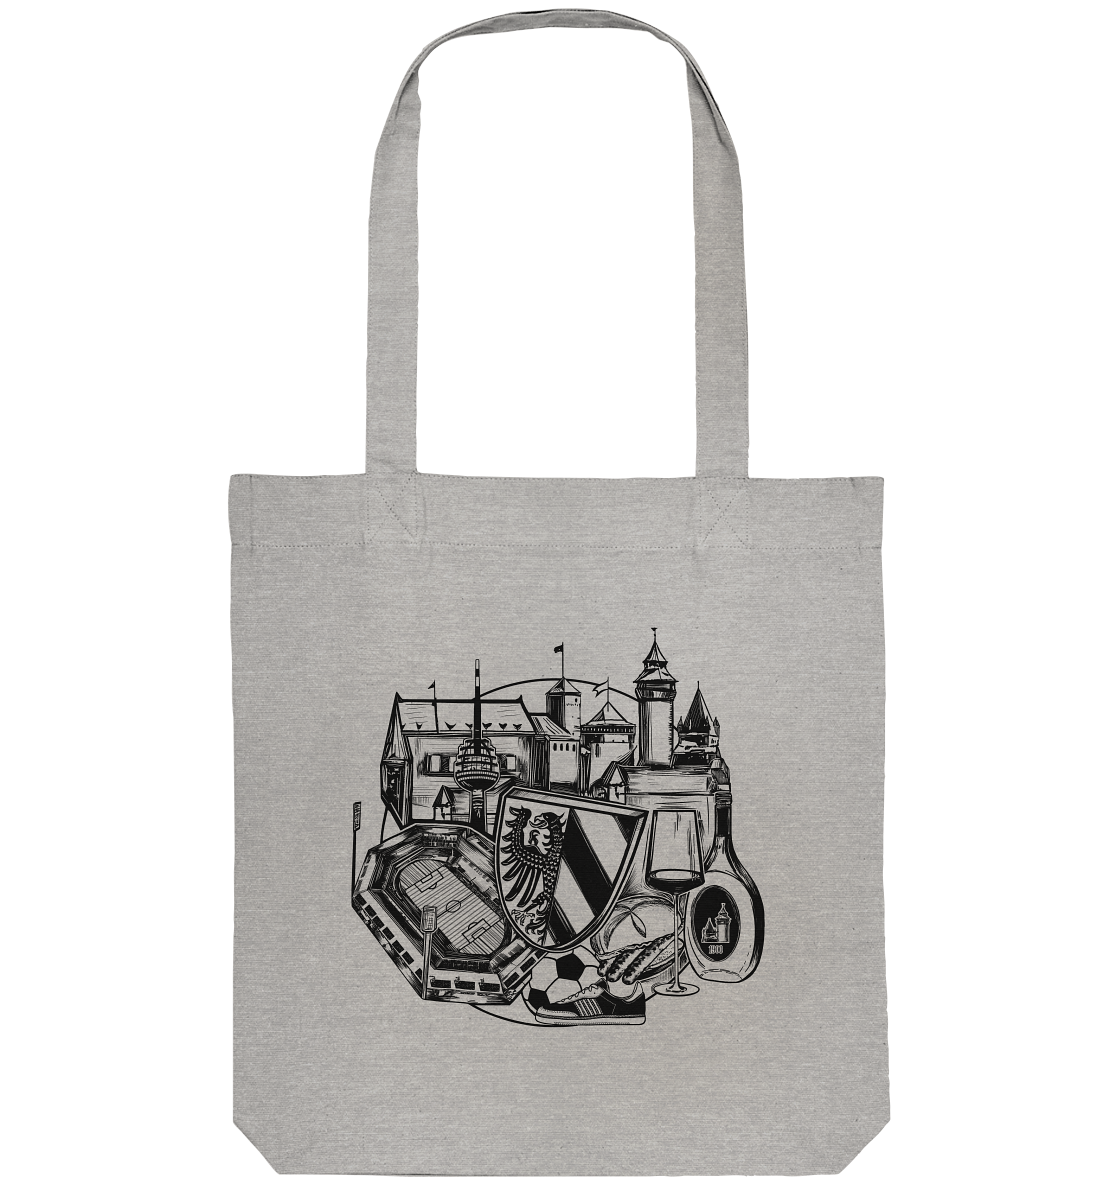 Authentic Tote Bag "Nuremberg" - Organic Tote Bag